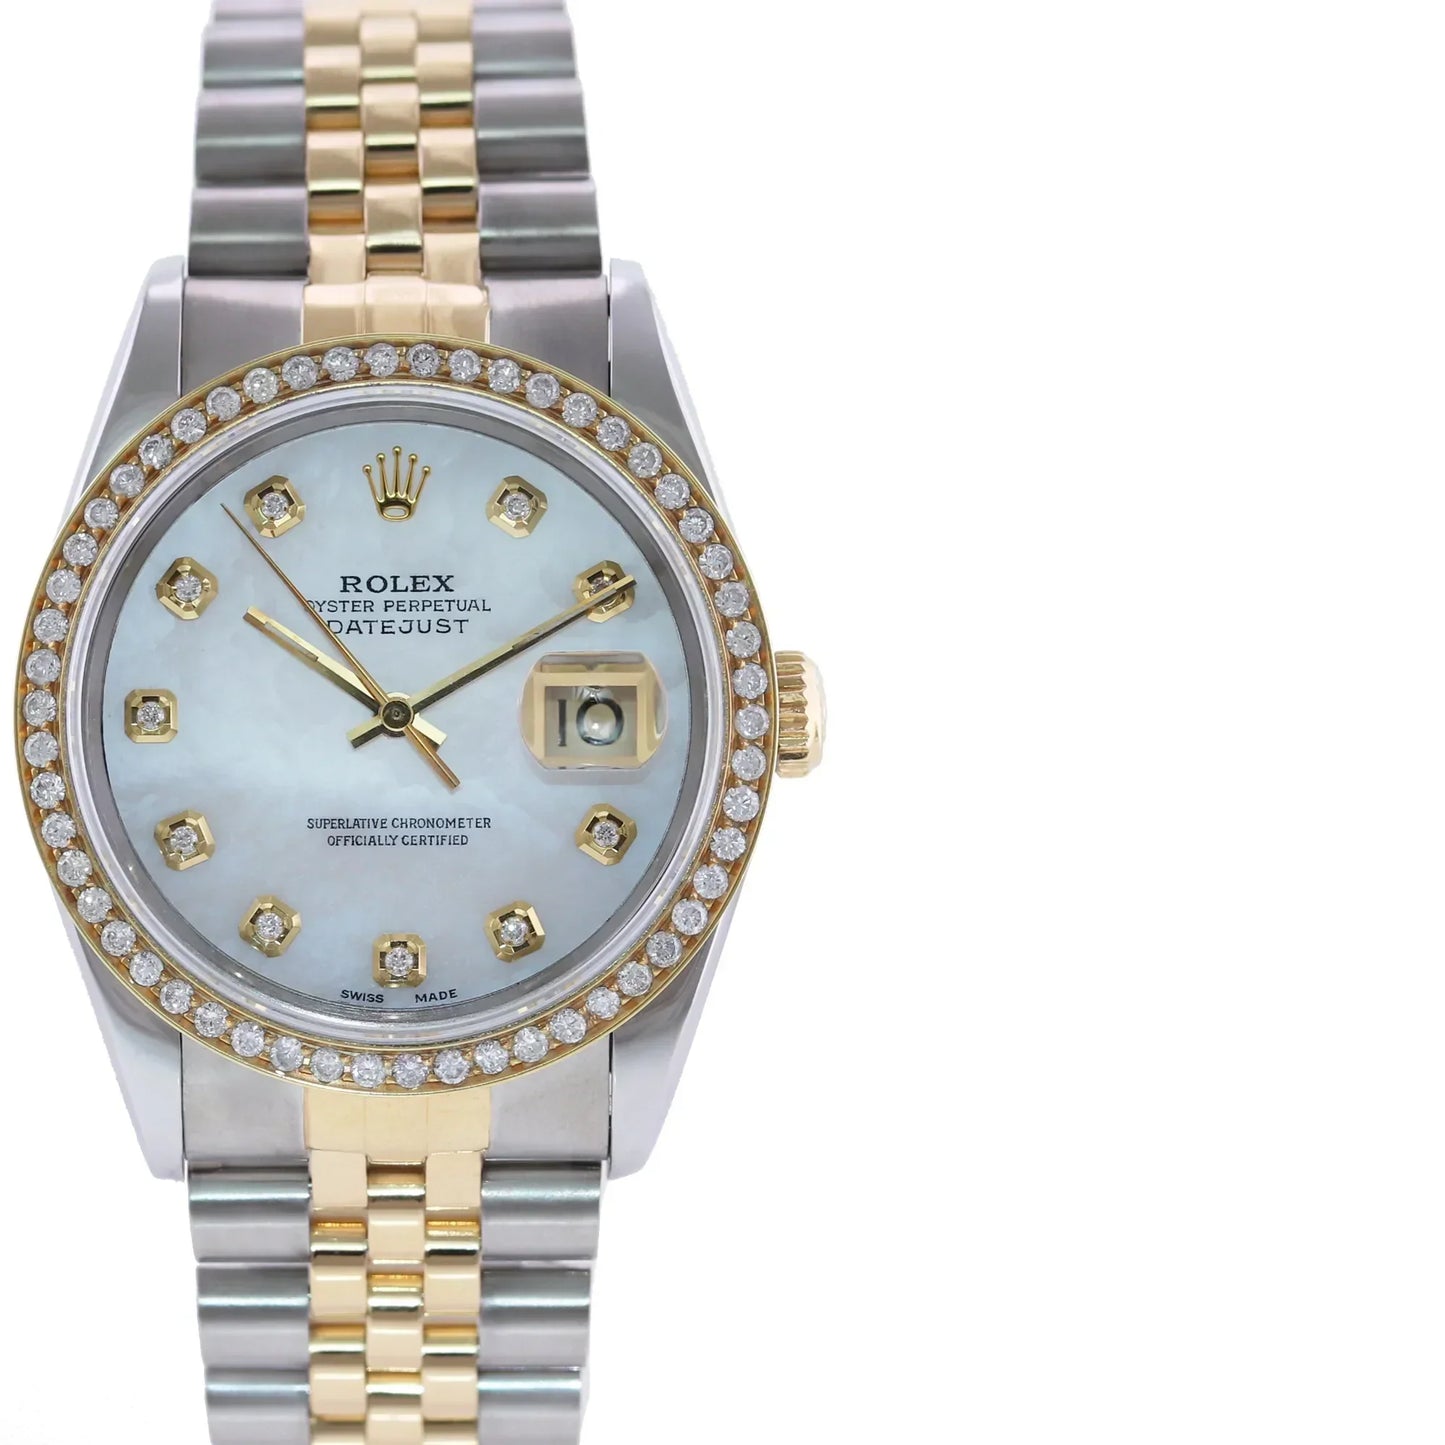 DIAMOND BEZEL Rolex DateJust 16233 Two-Tone 18K Yellow Gold MOP Jubilee Watch